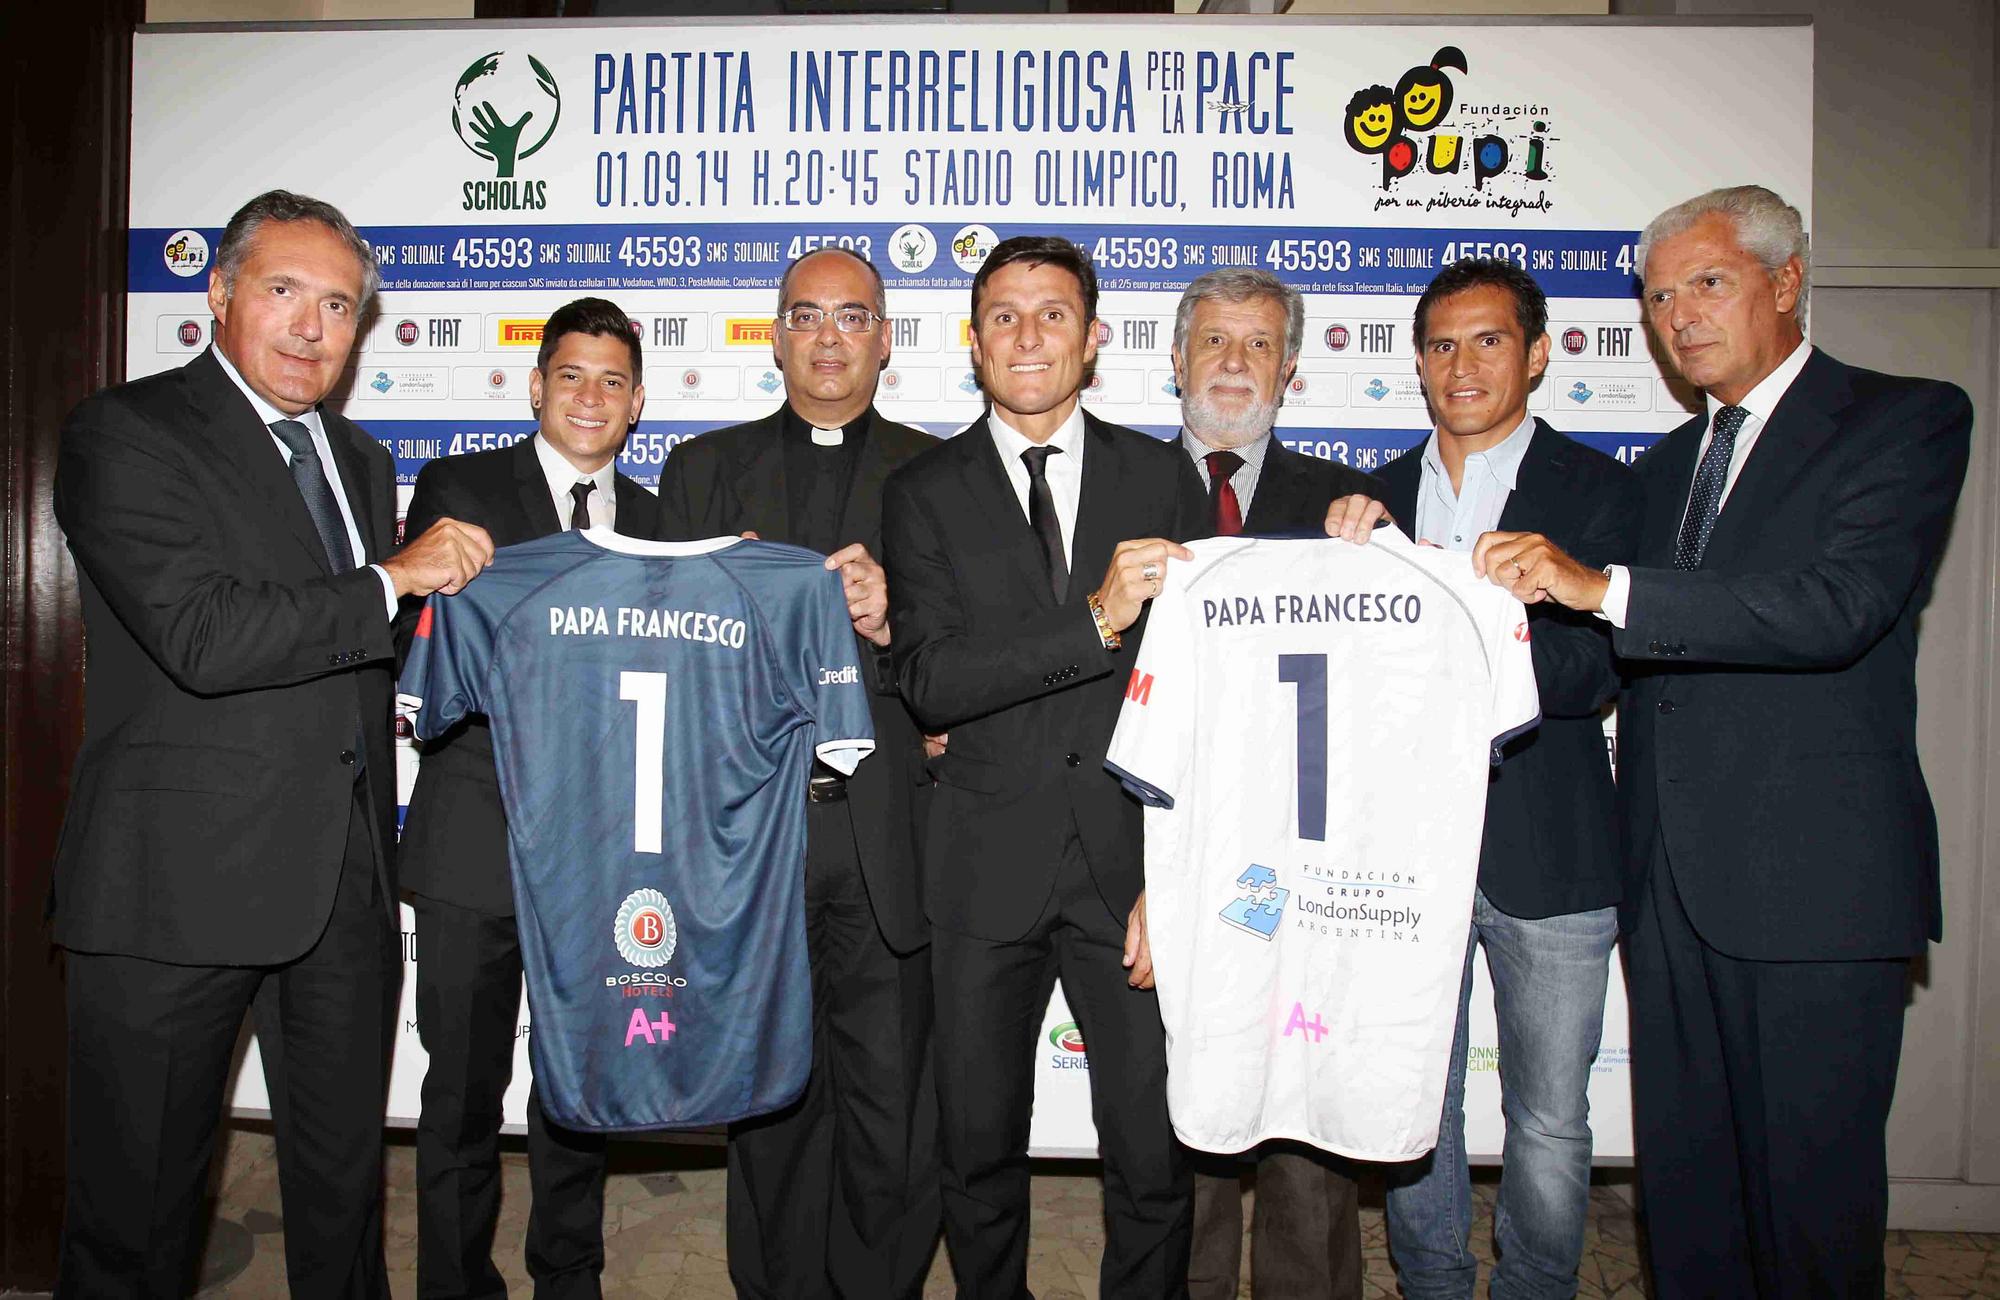 Calcio, spettacolo e fratellanza nella Partita Interreligiosa Per La Pace